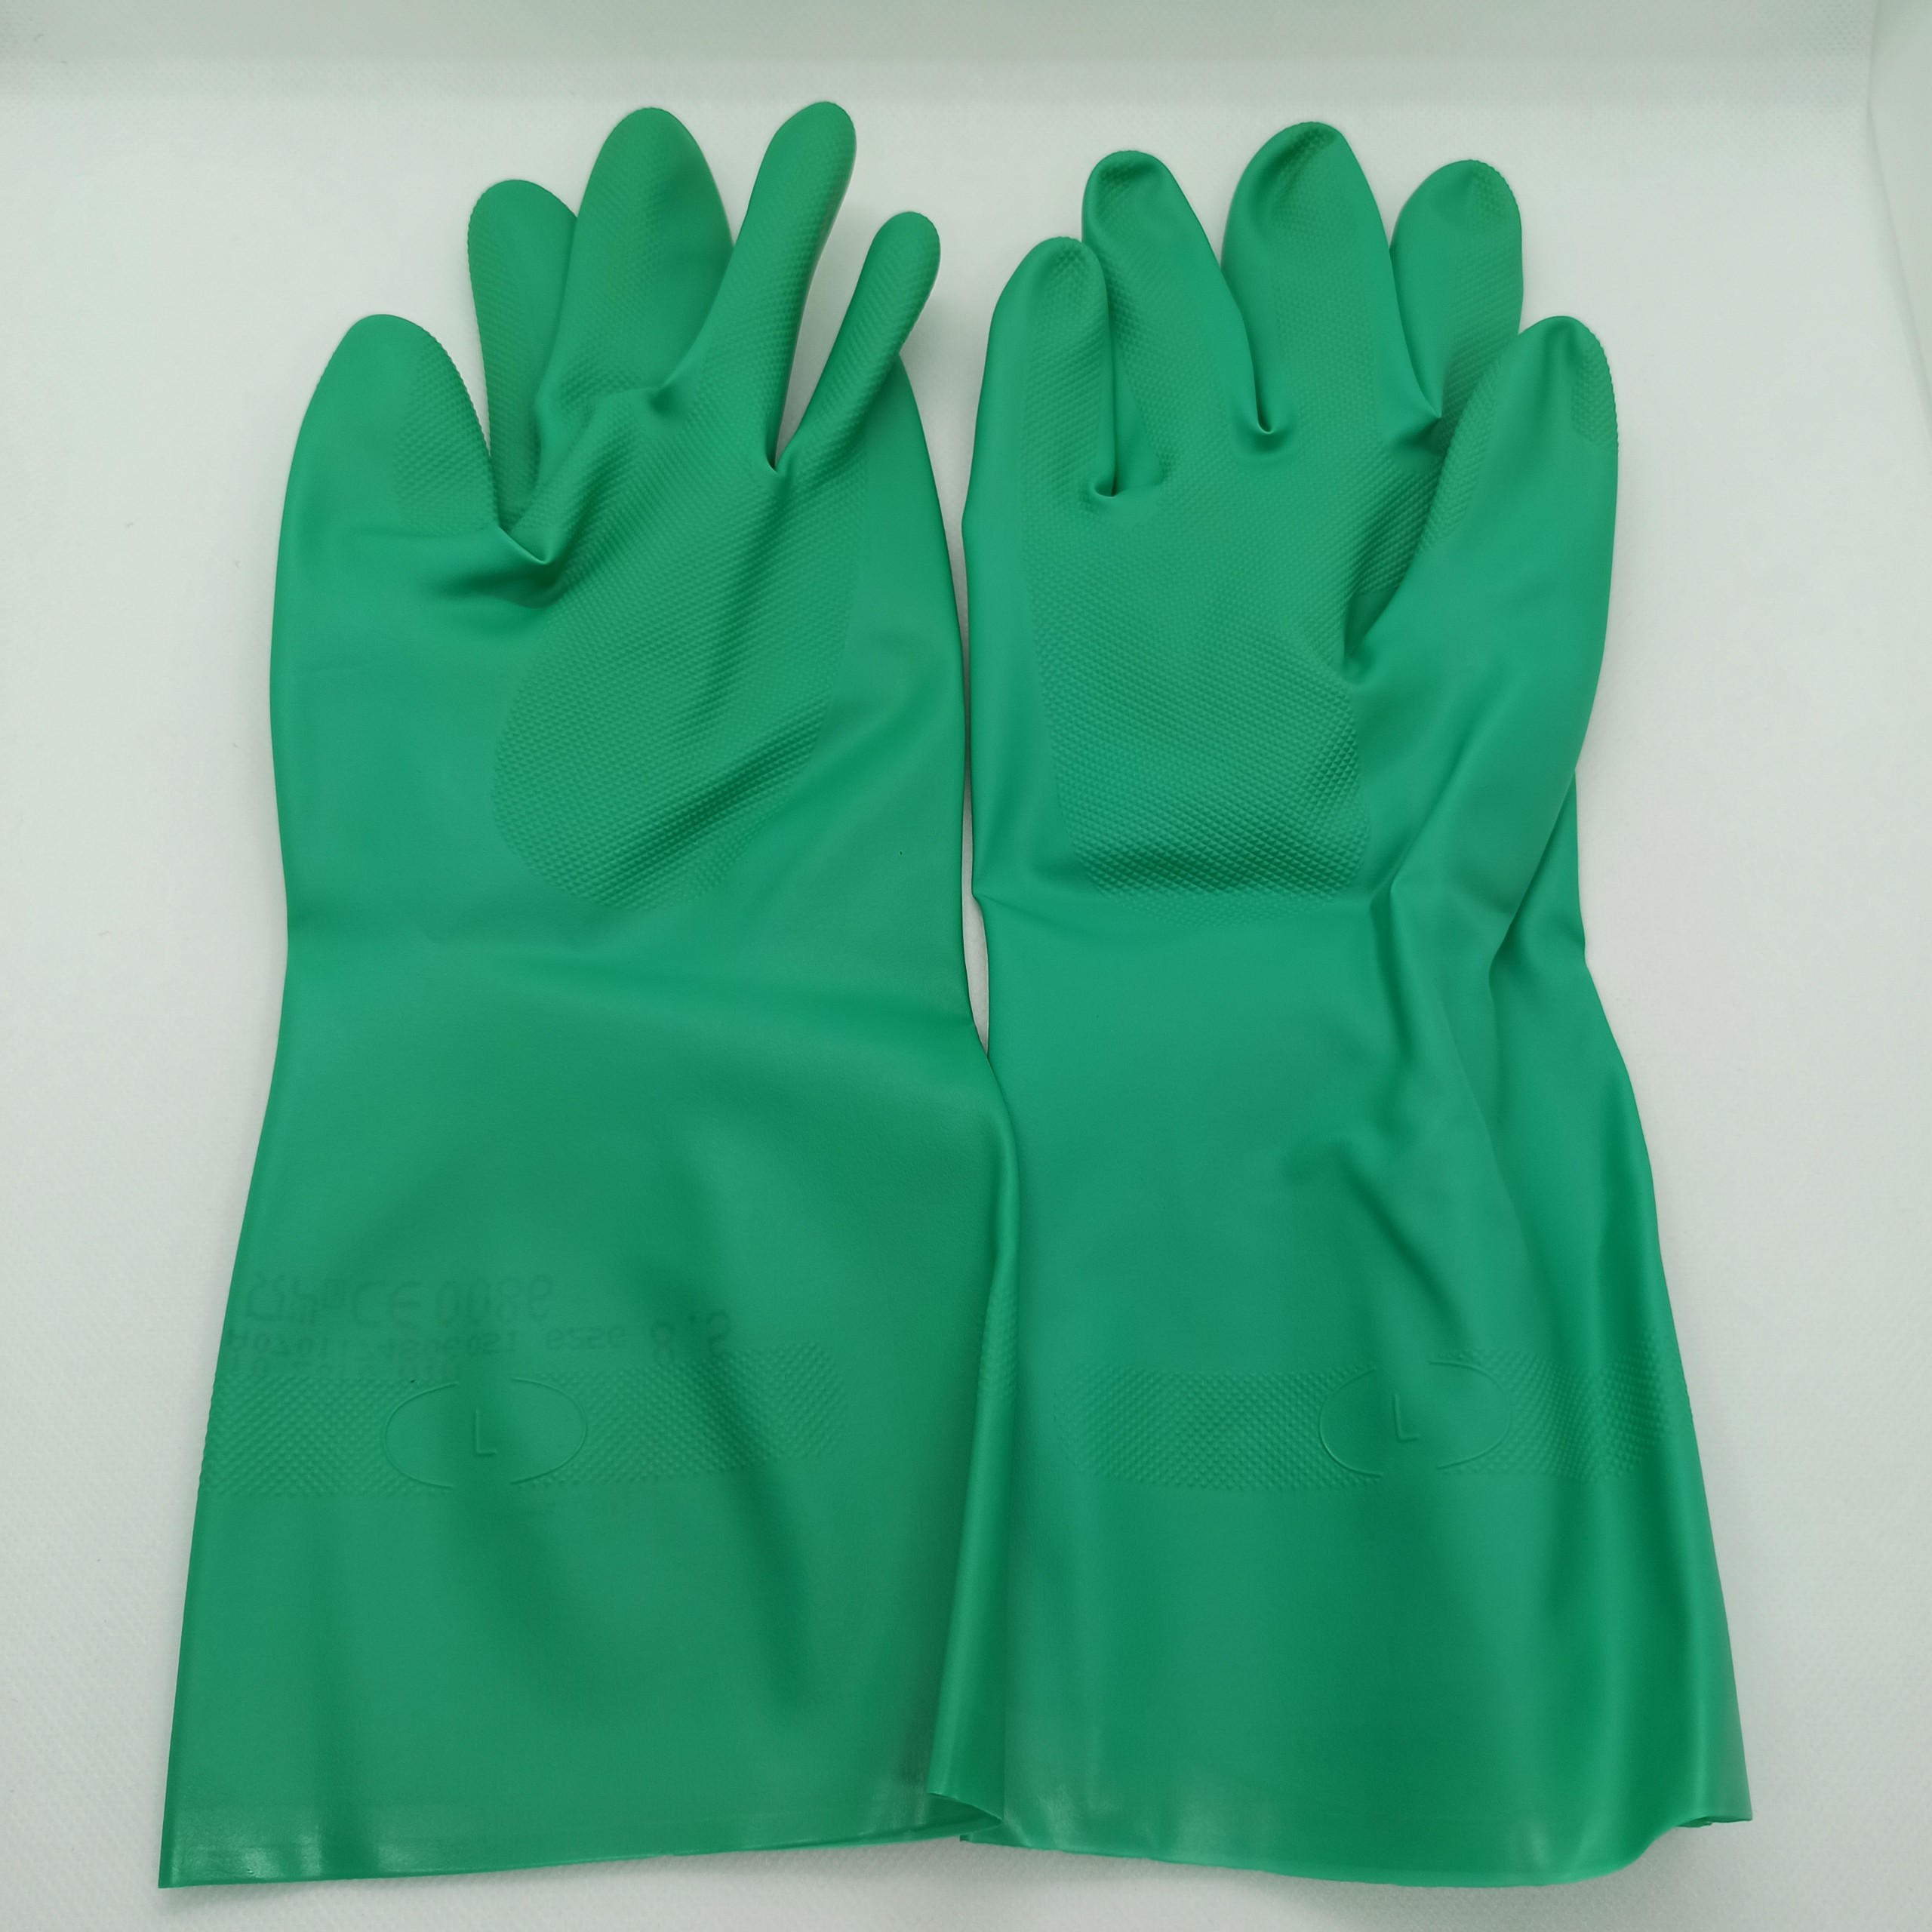 Găng tay chống hóa chất Nitrile G25